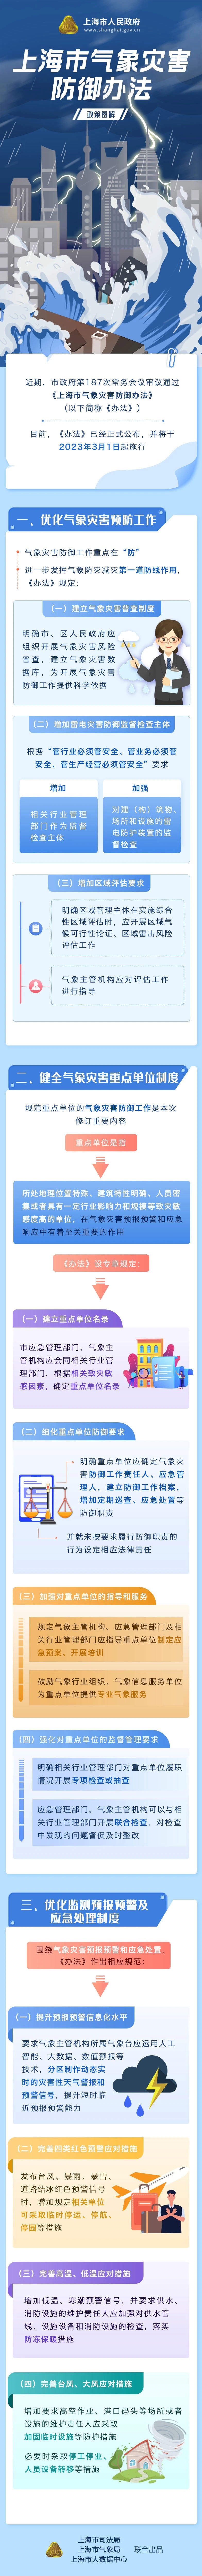 上海市气象灾害防御办法政策图解.jpg